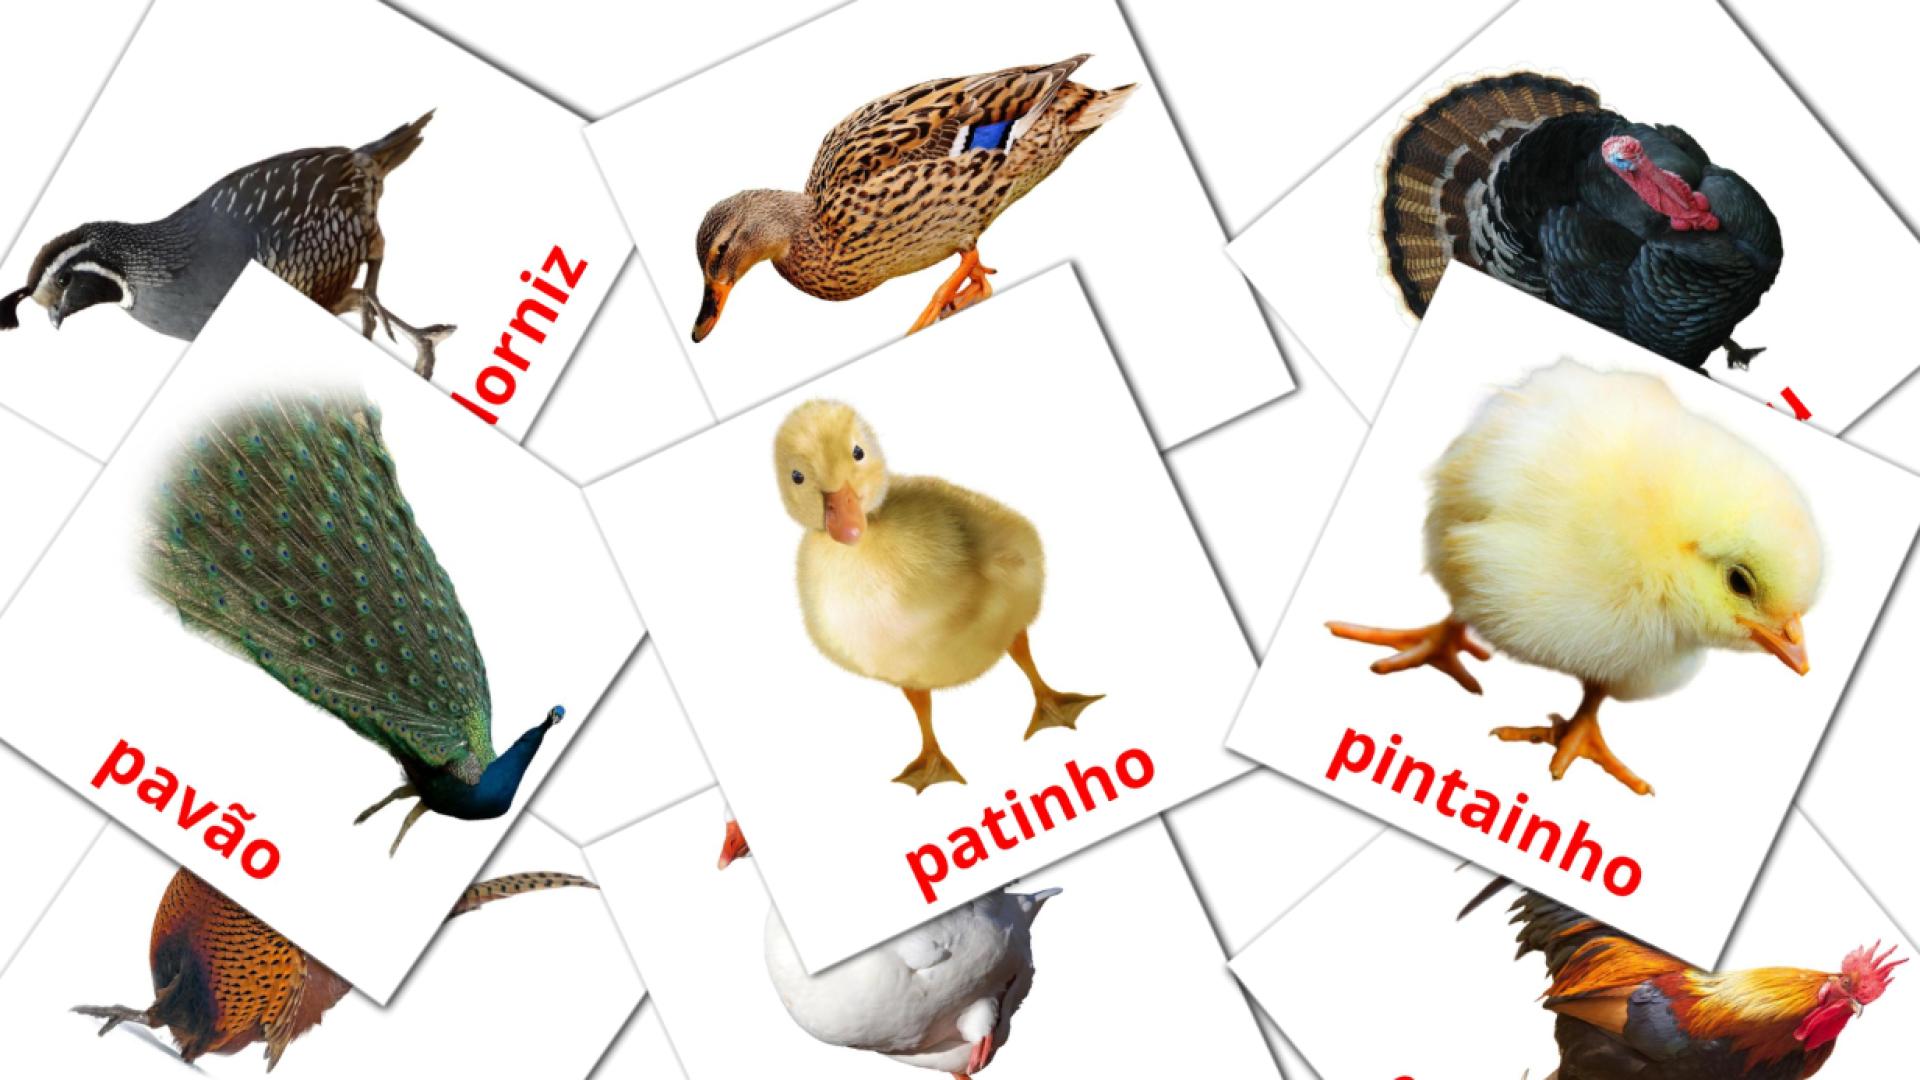 Bildkarten für Aves da quinta